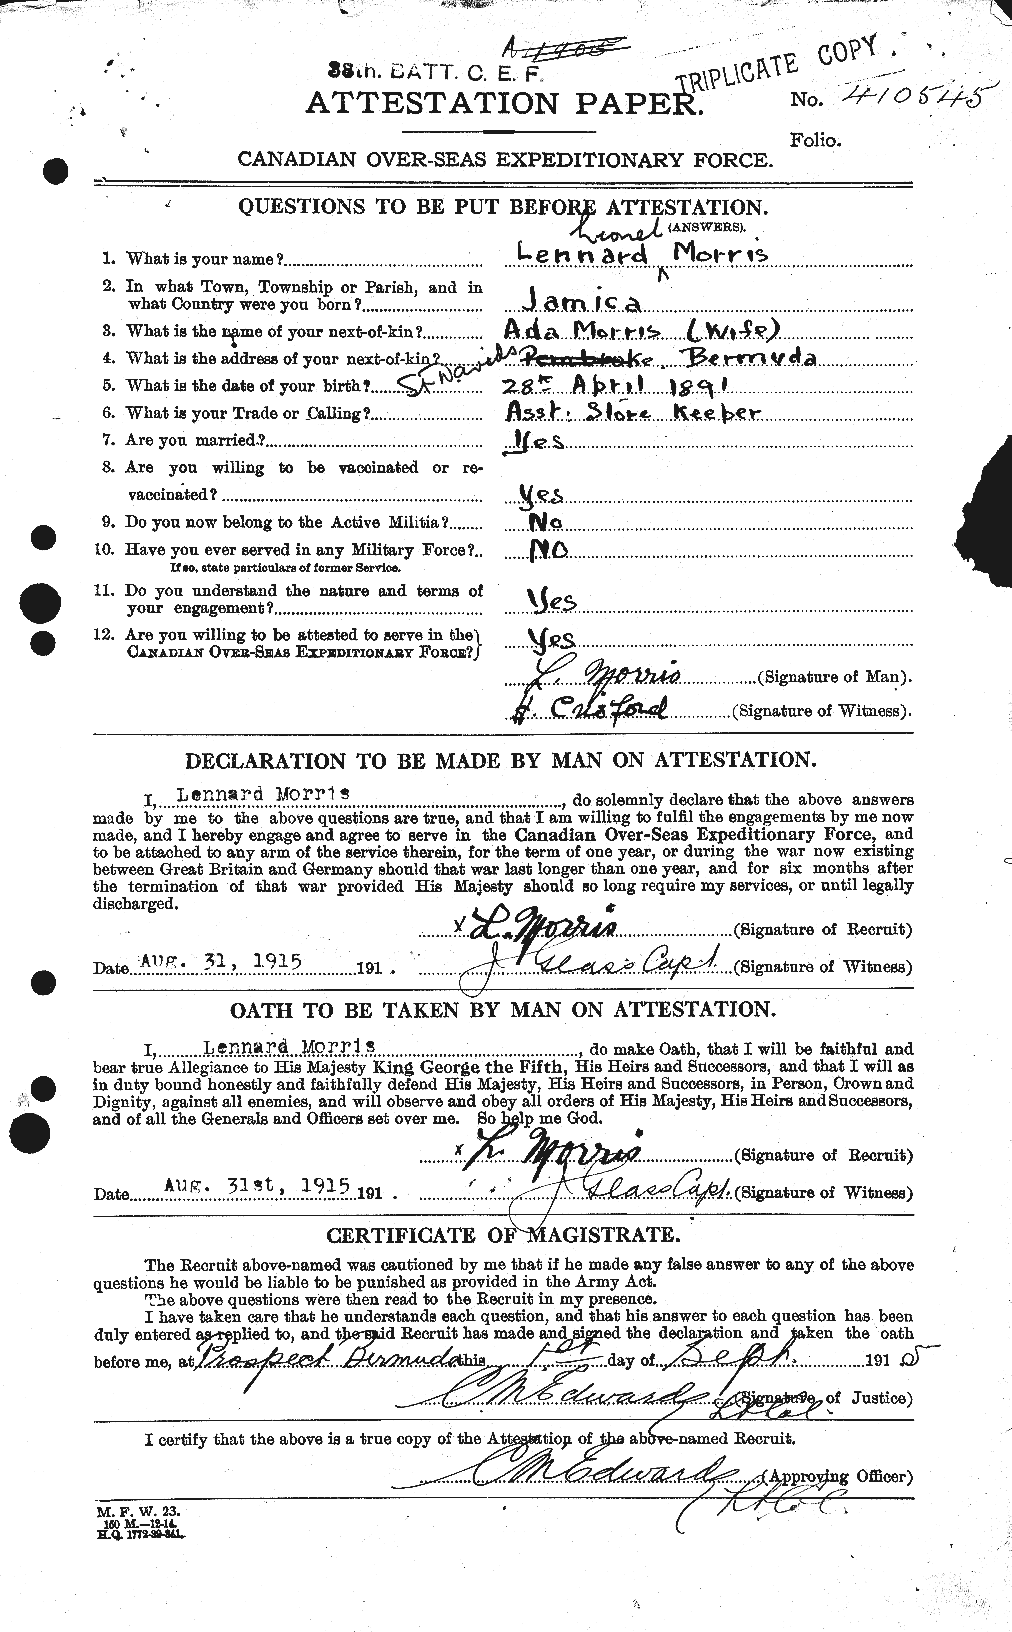 Dossiers du Personnel de la Première Guerre mondiale - CEC 508568a